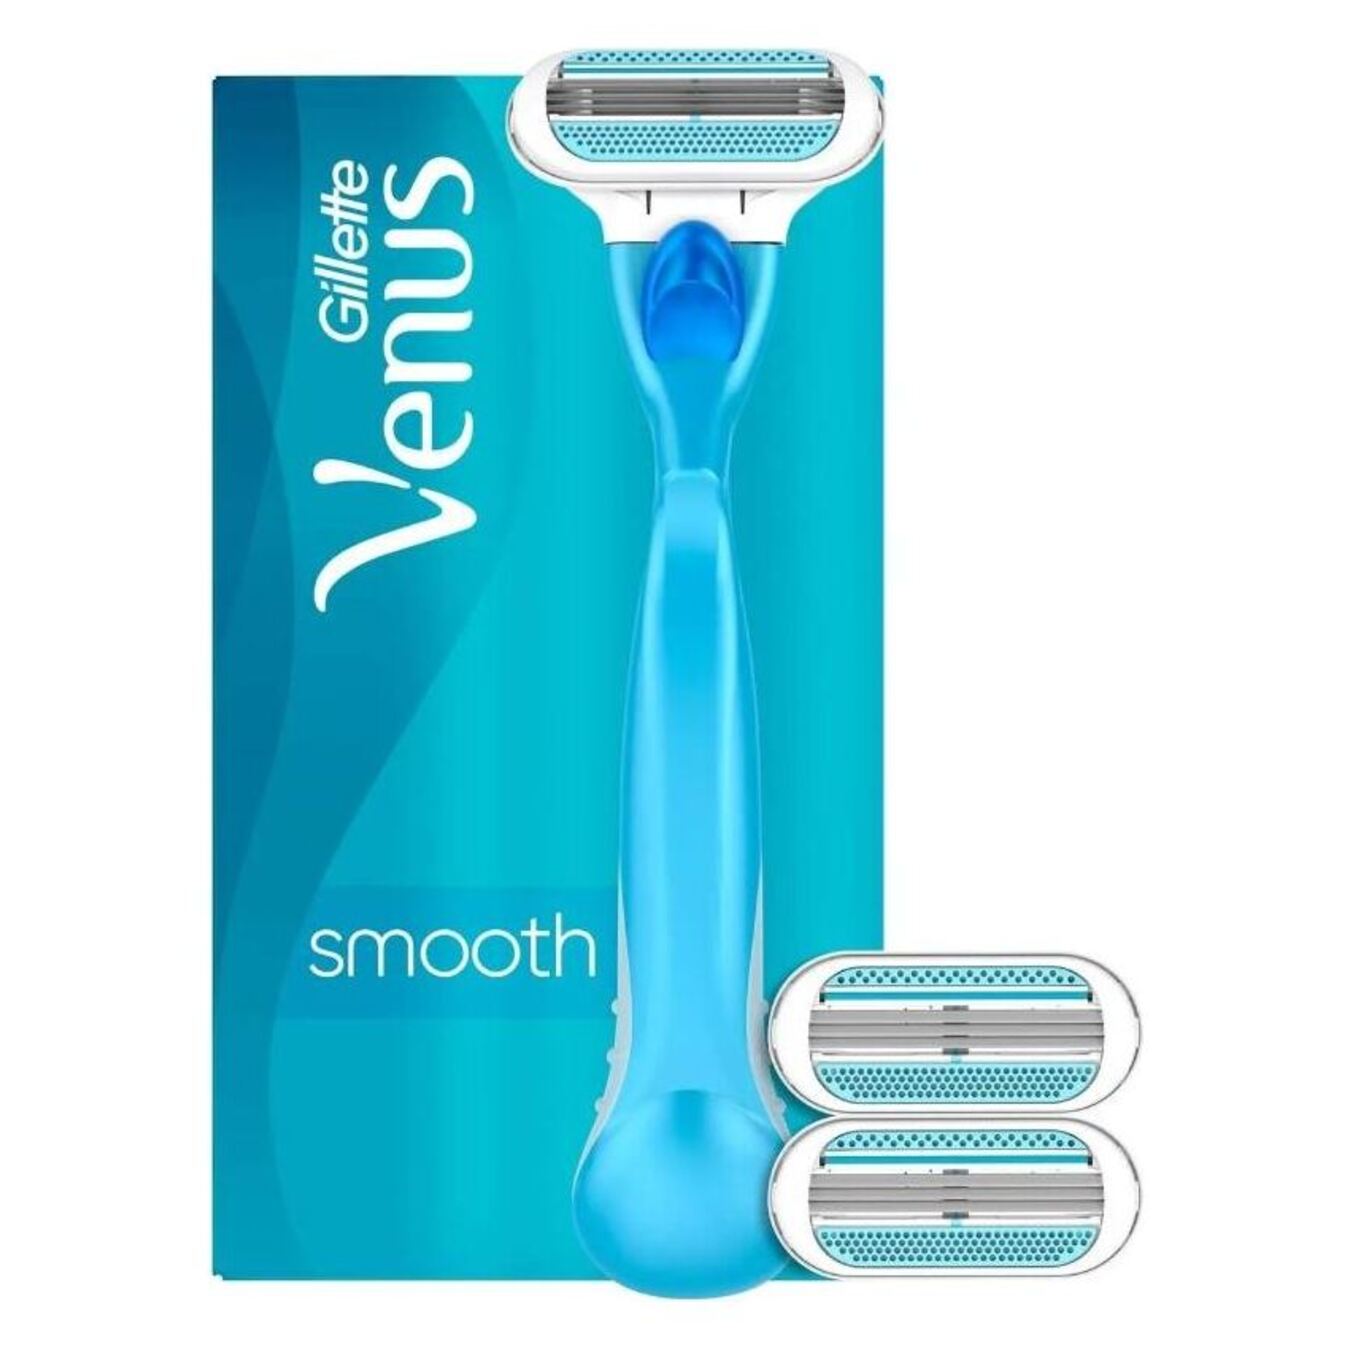 Gillette Venus razor with replaceable Gillette Venus cassettes for shaving 3 pcs 2